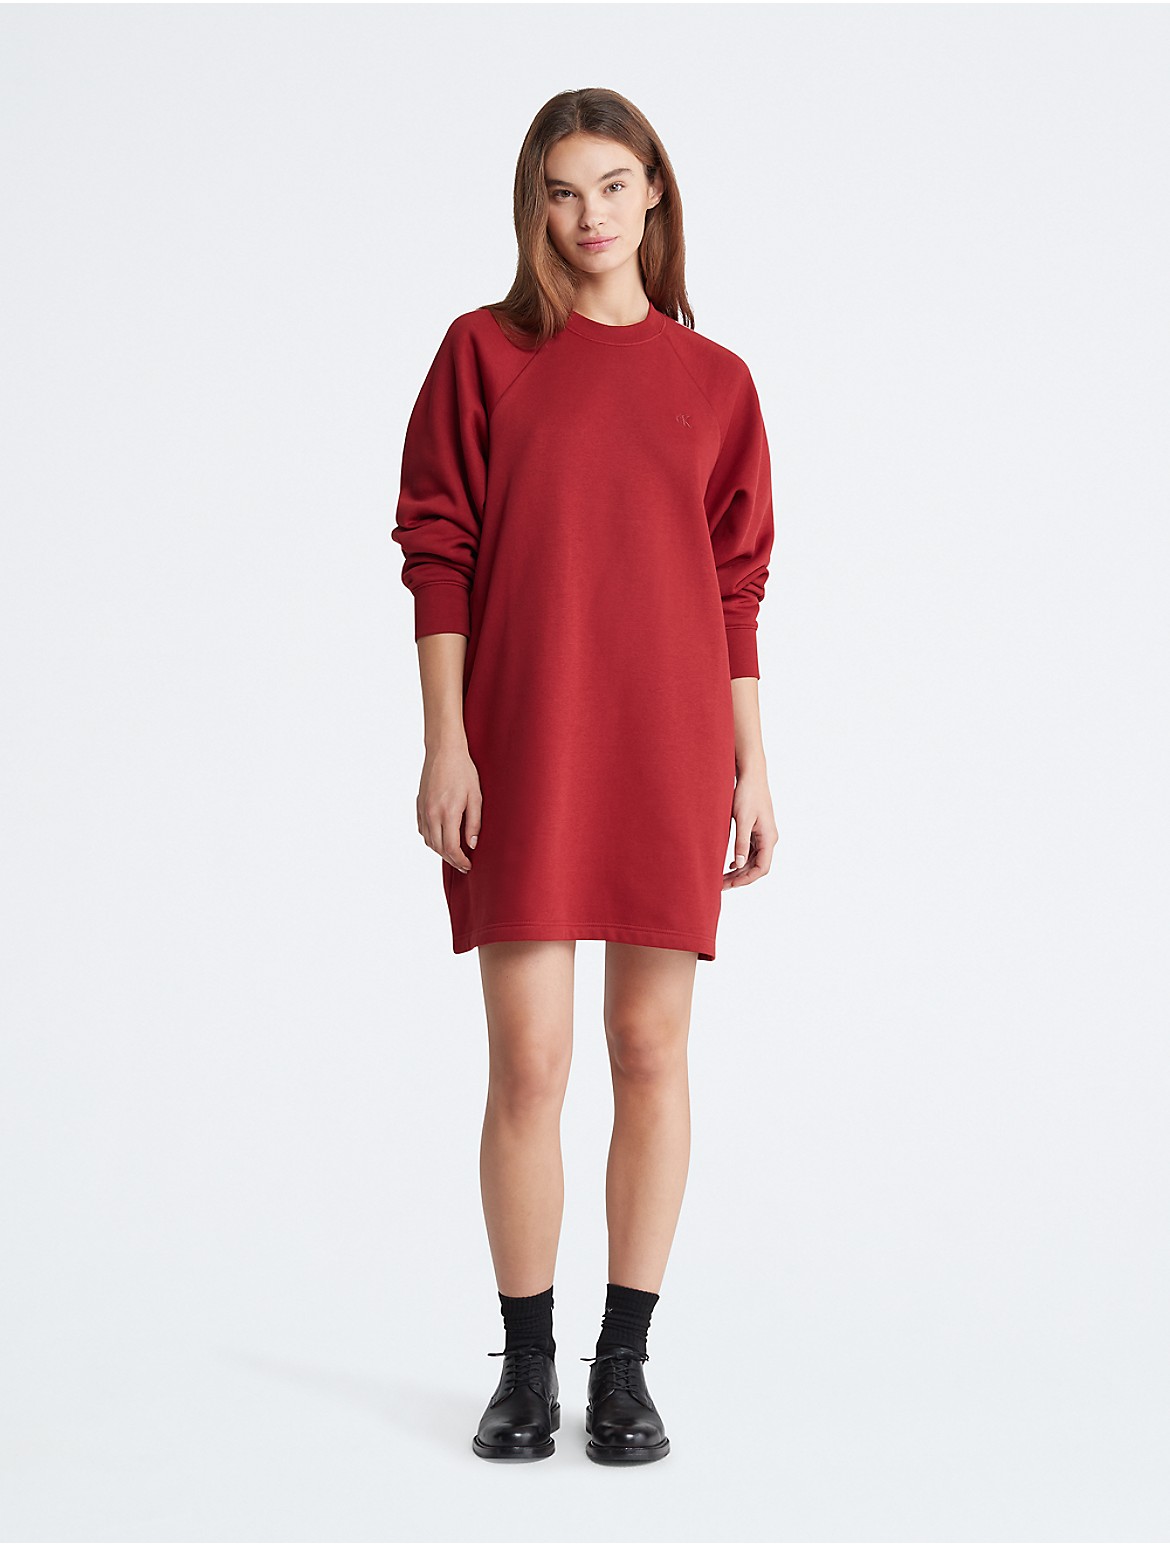 Calvin Klein Women's Archive Logo Fleece Sweatshirt Dress - Red - L